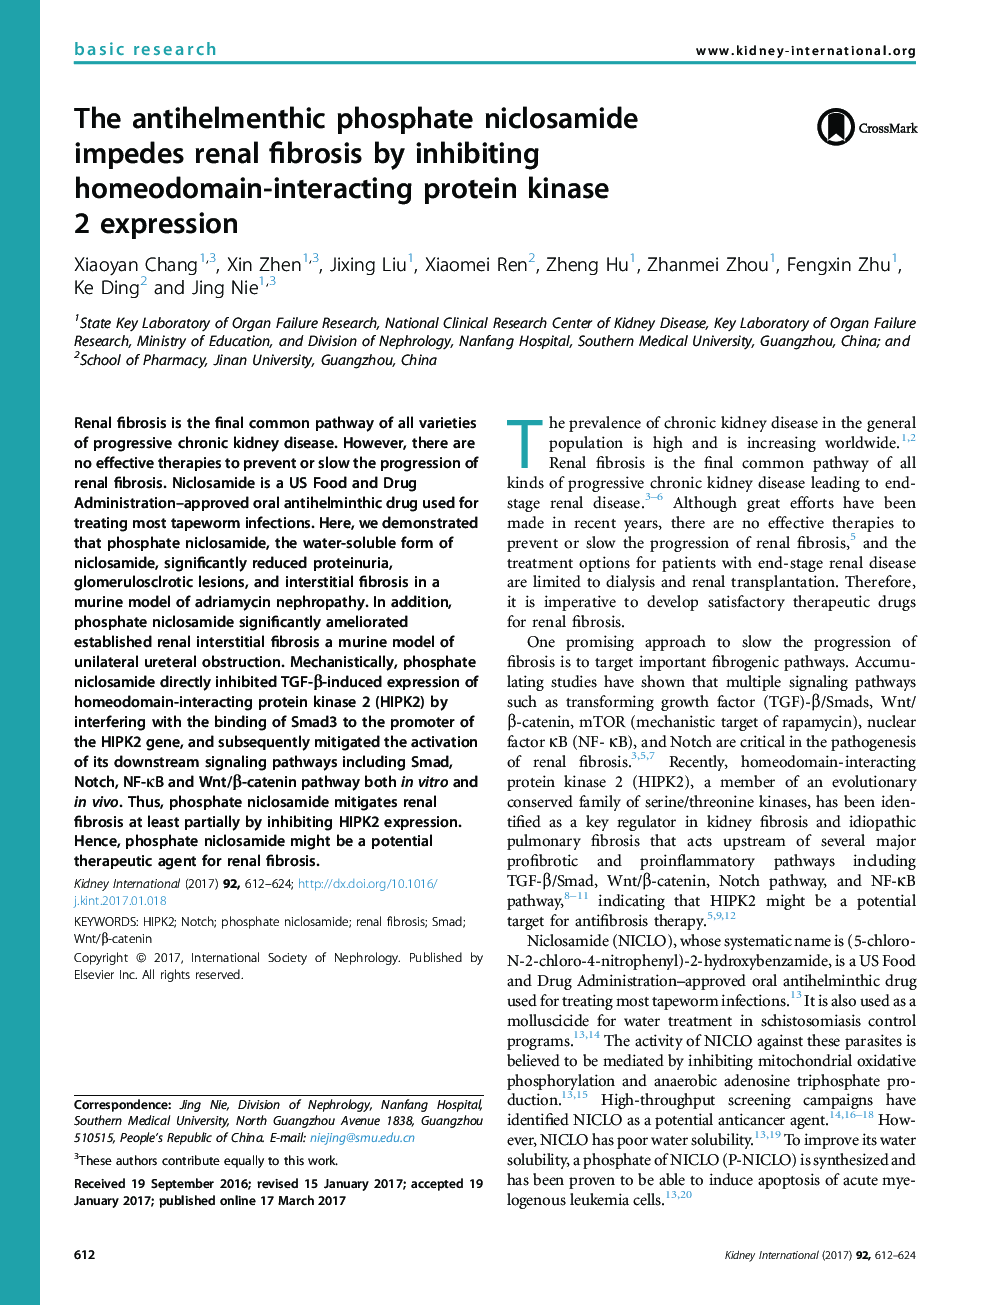 فسفات آنتیلستیکس نیکلزامید با مهار هضم پروتئین کیناز 2 در ارتباط با هیدوودینام، فیبروز کلیوی را مختل می کند 